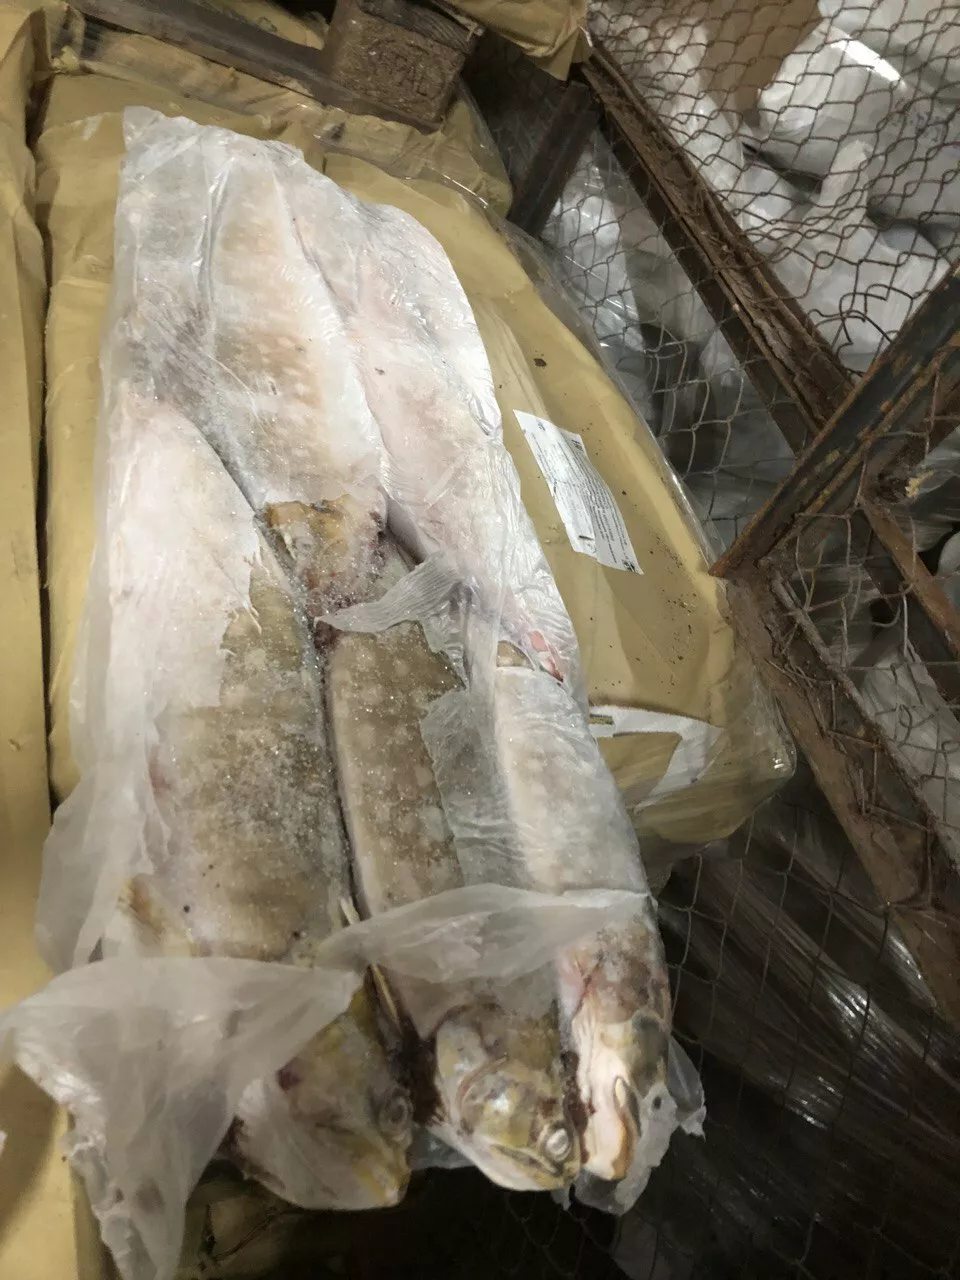 мороженную пищевую рыбную продукцию в Самаре и Самарской области 6